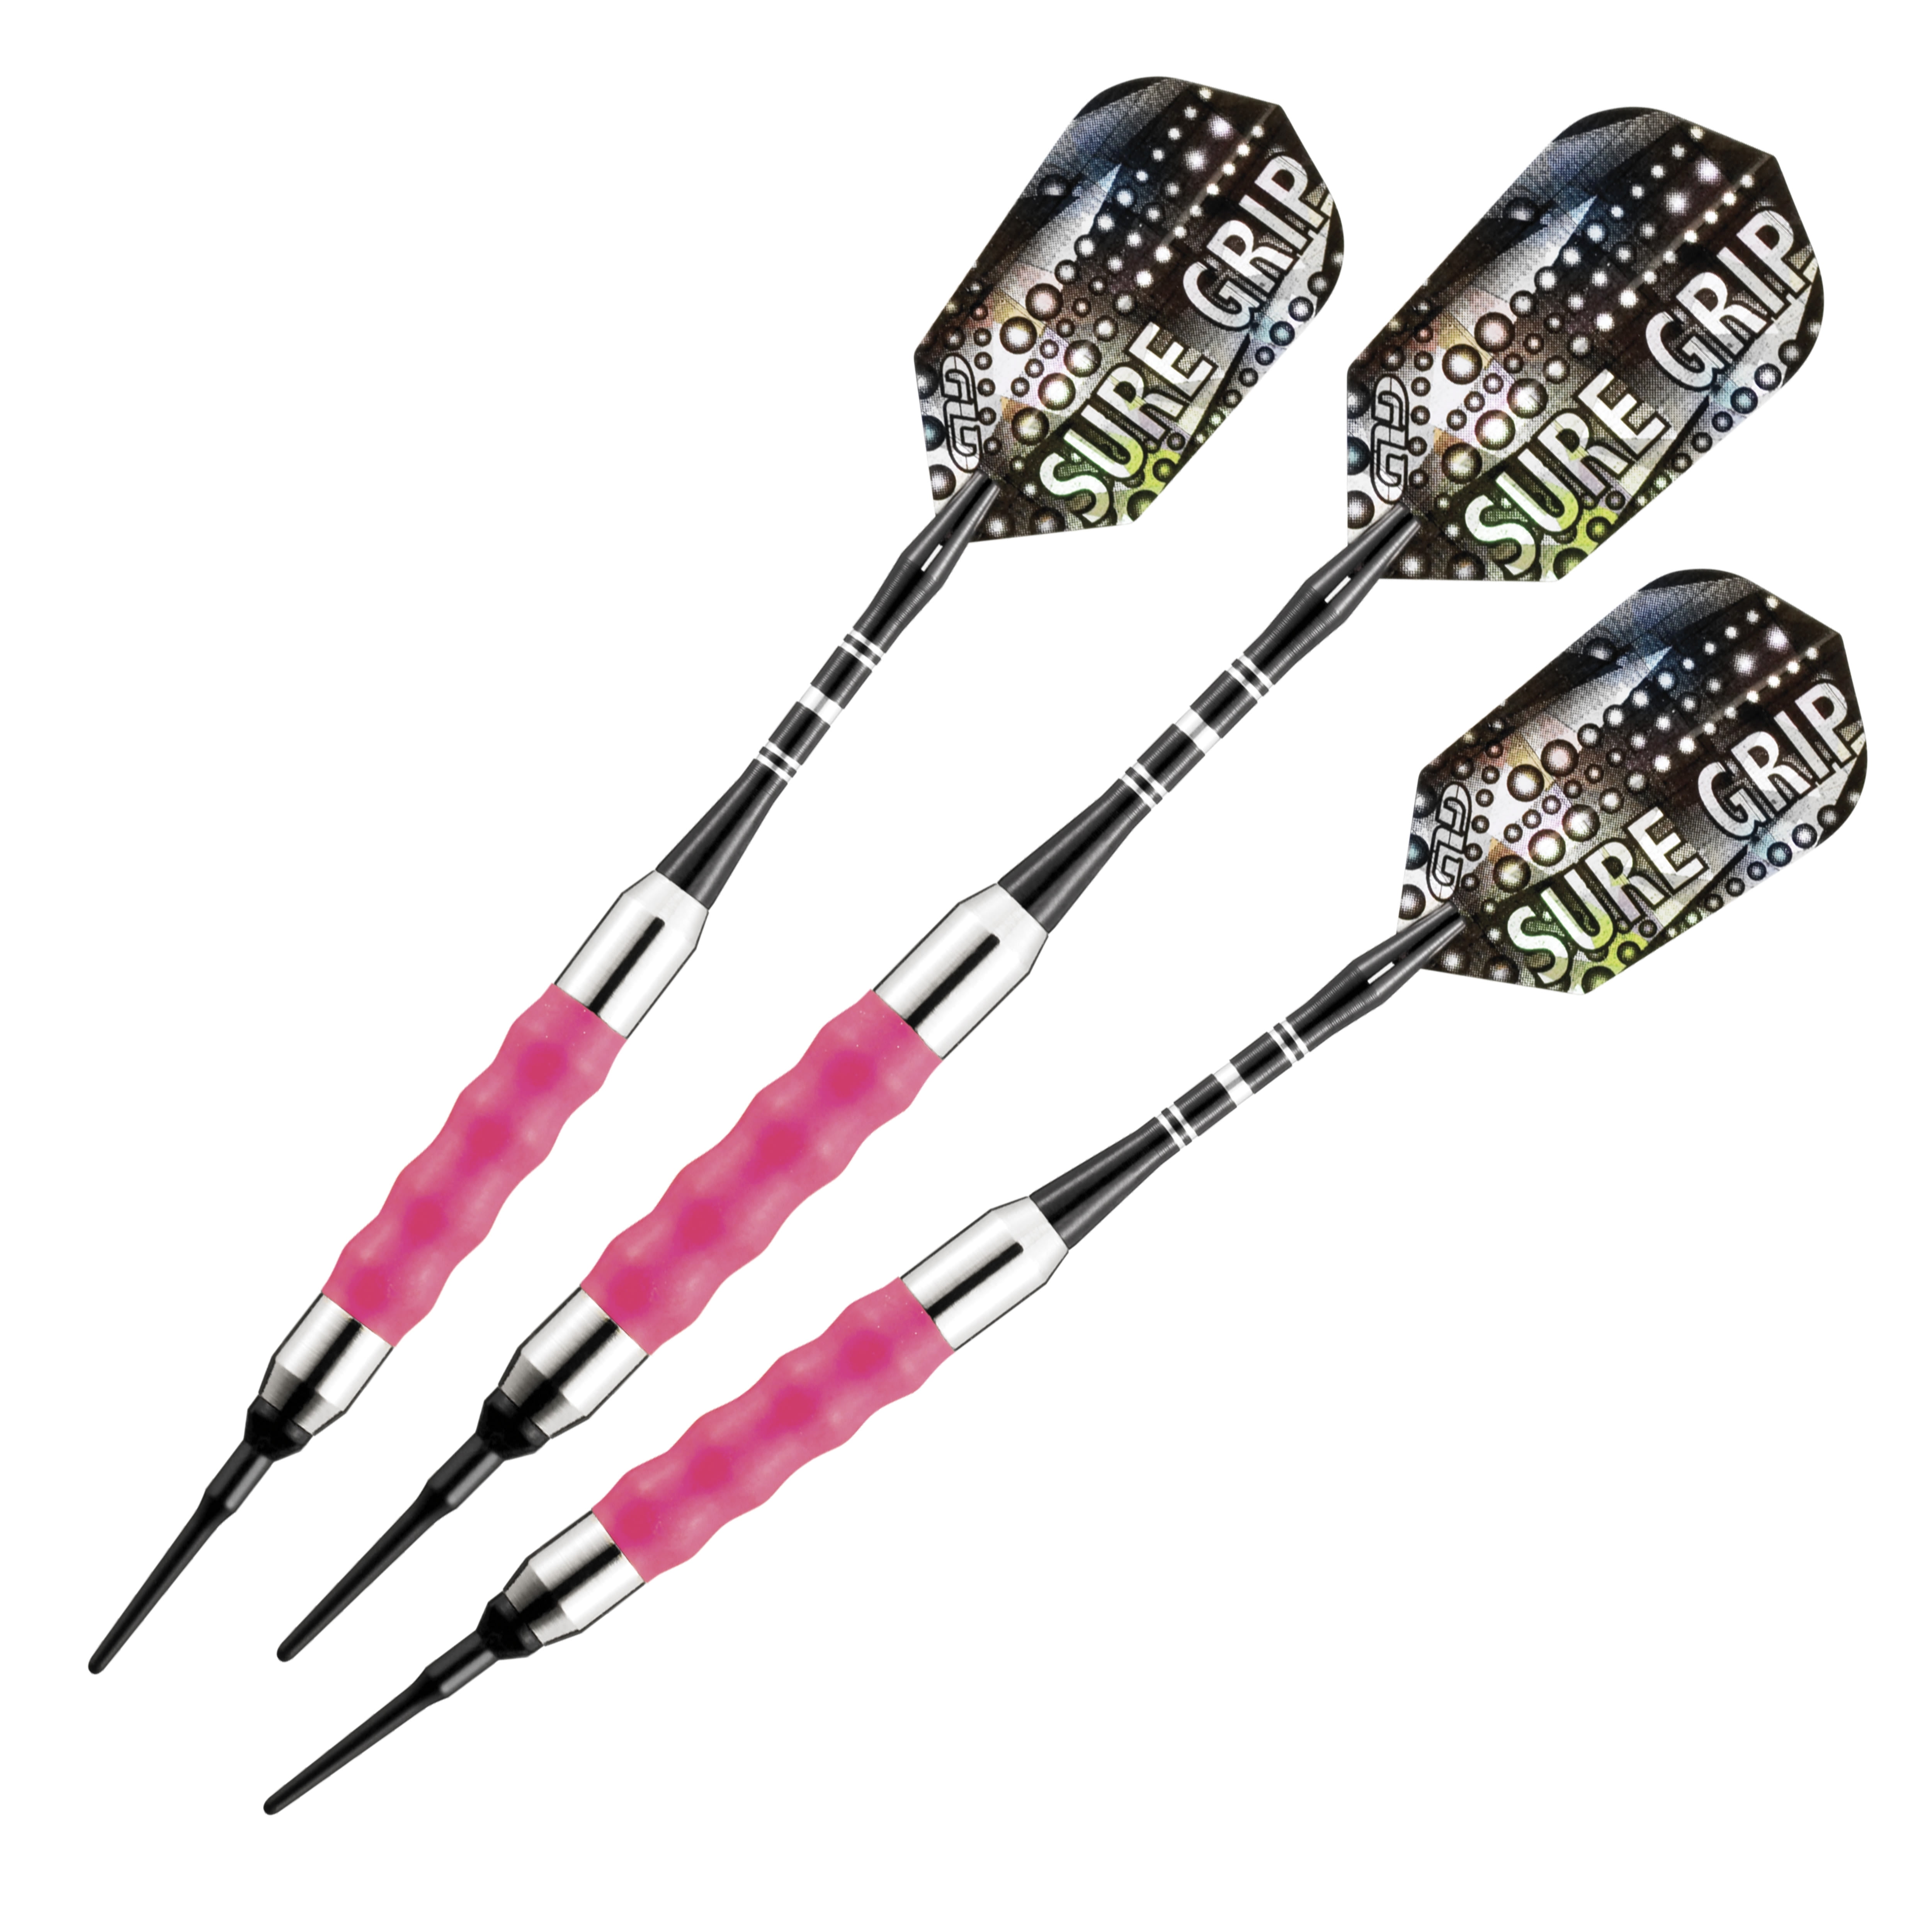 Viper Desert Rose 16g Soft Tip Dart Set 20-0600-16 darts flights shafts tips 